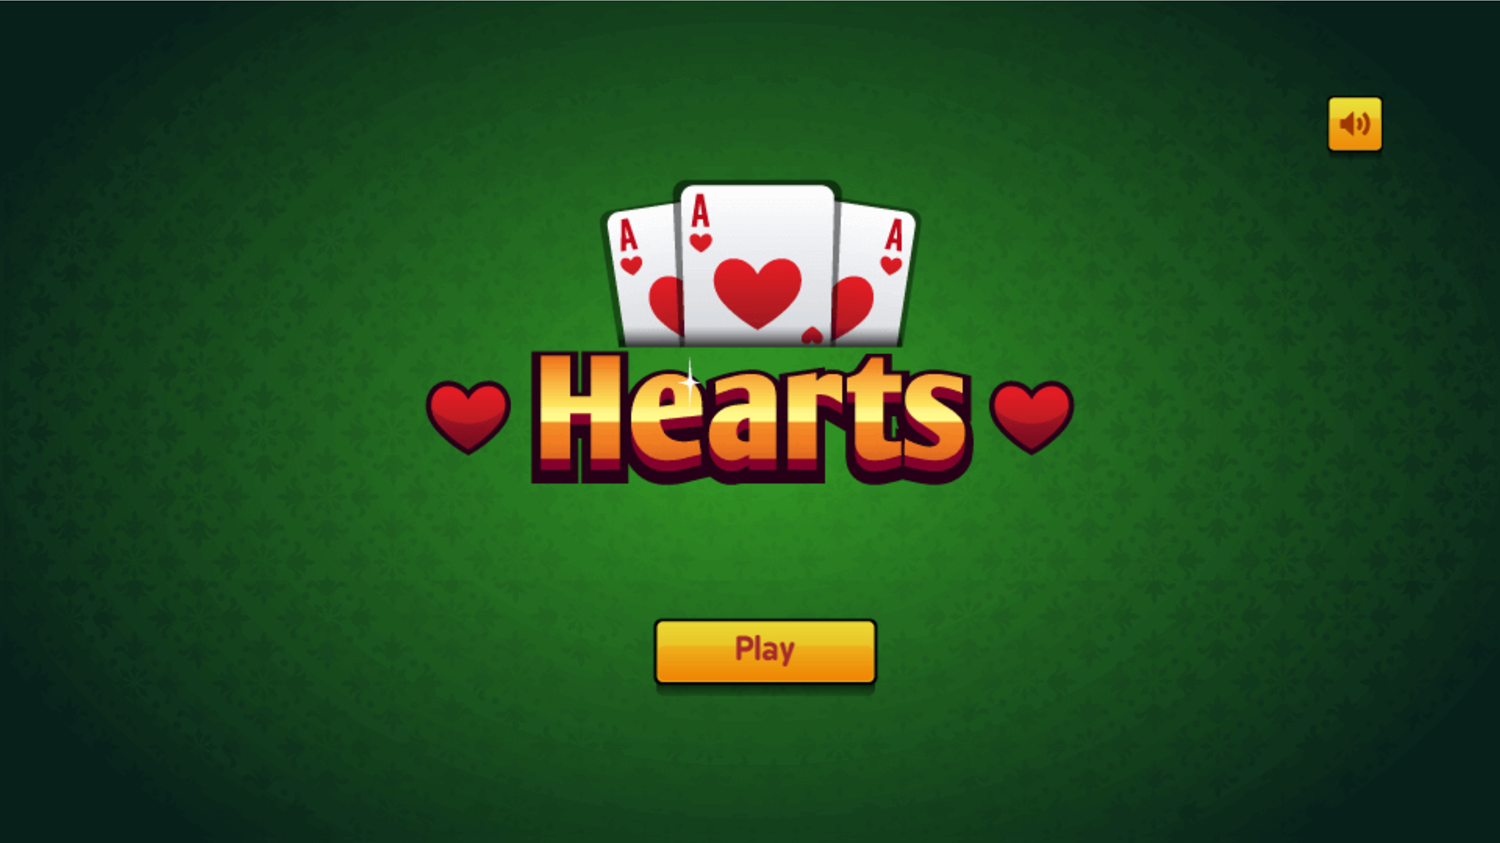 Hearts Card Game Welcome Screen Screenshot.